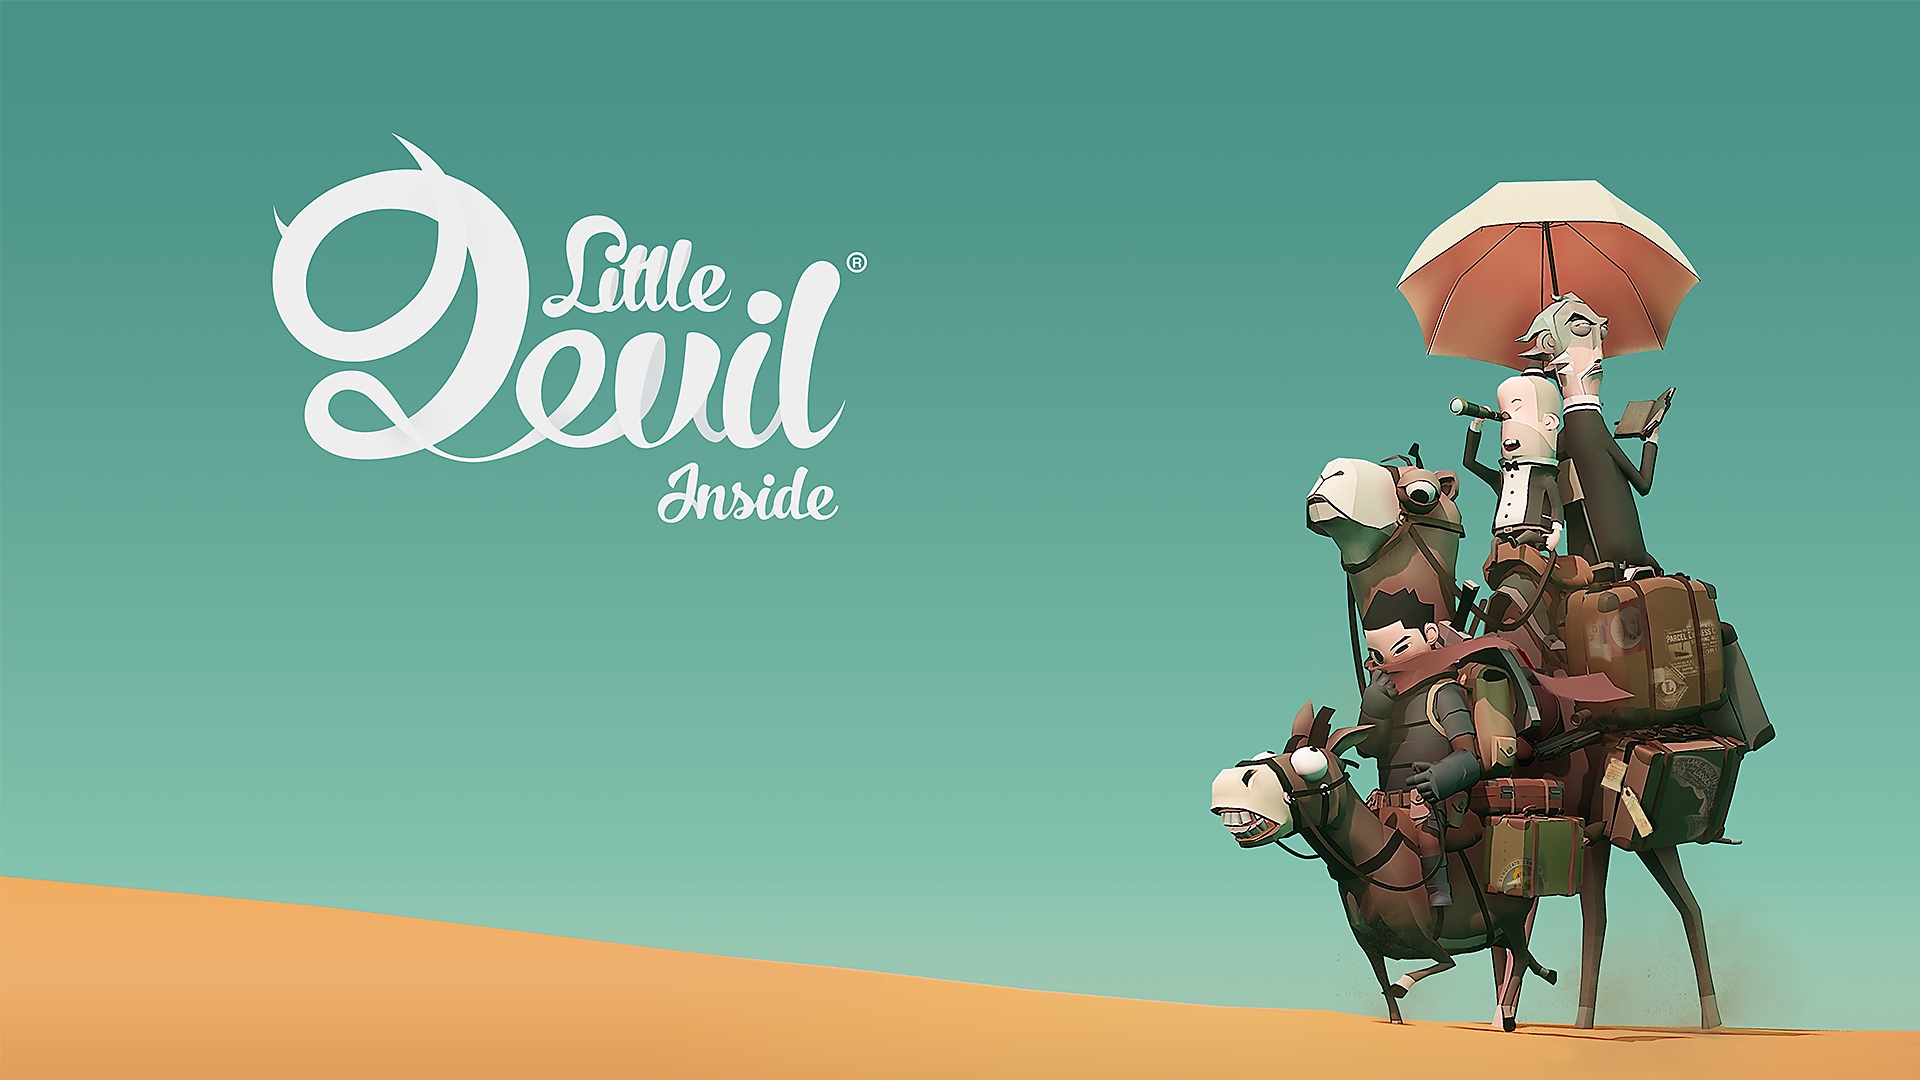 الصورة الفنية الأساسية للعبة Little Devil Inside